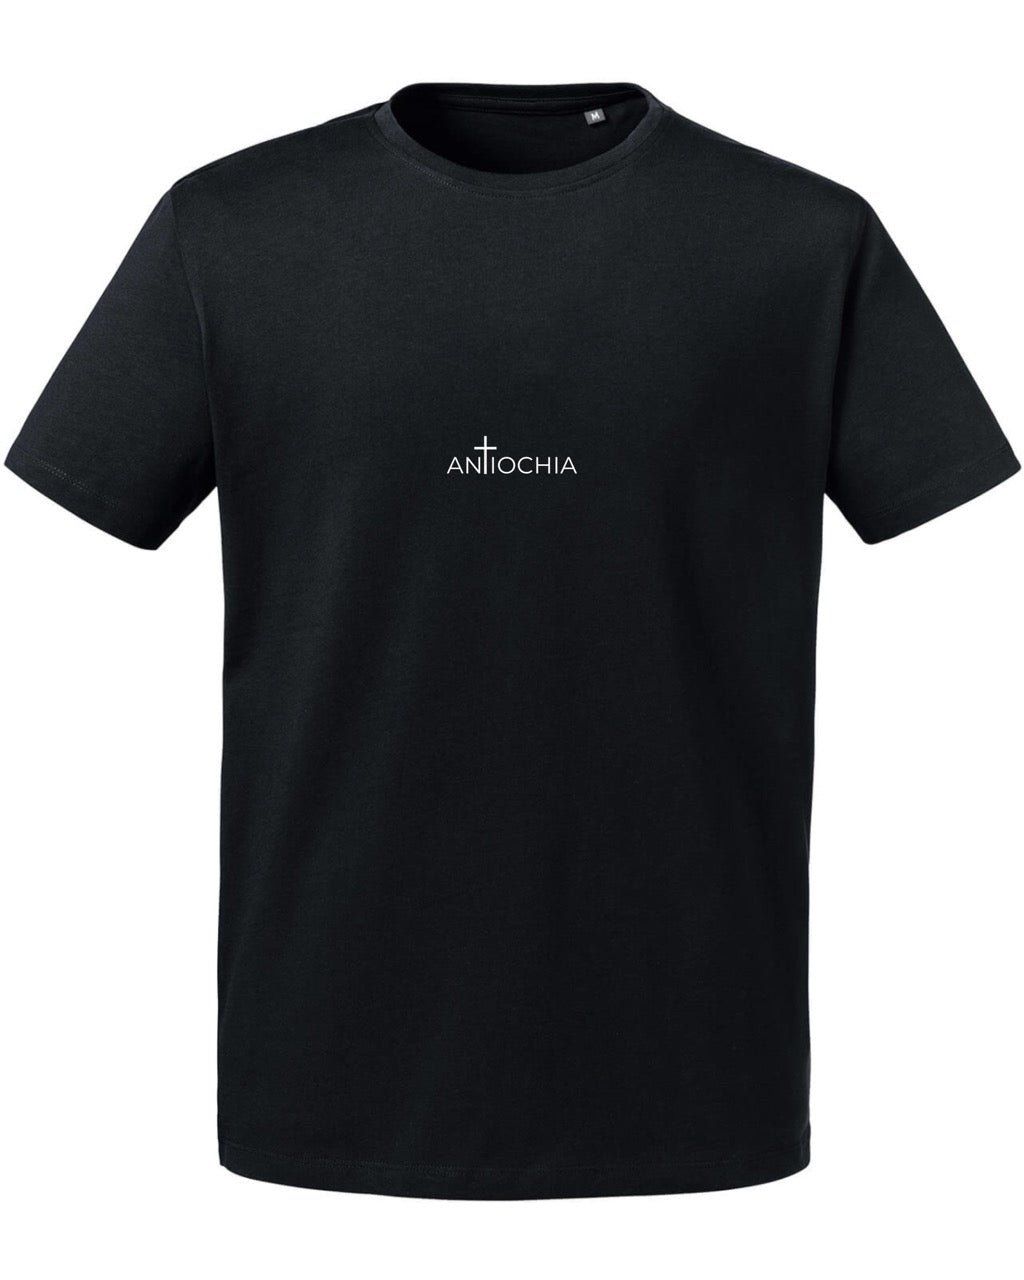 Essential Herren T-Shirt - "Adam"